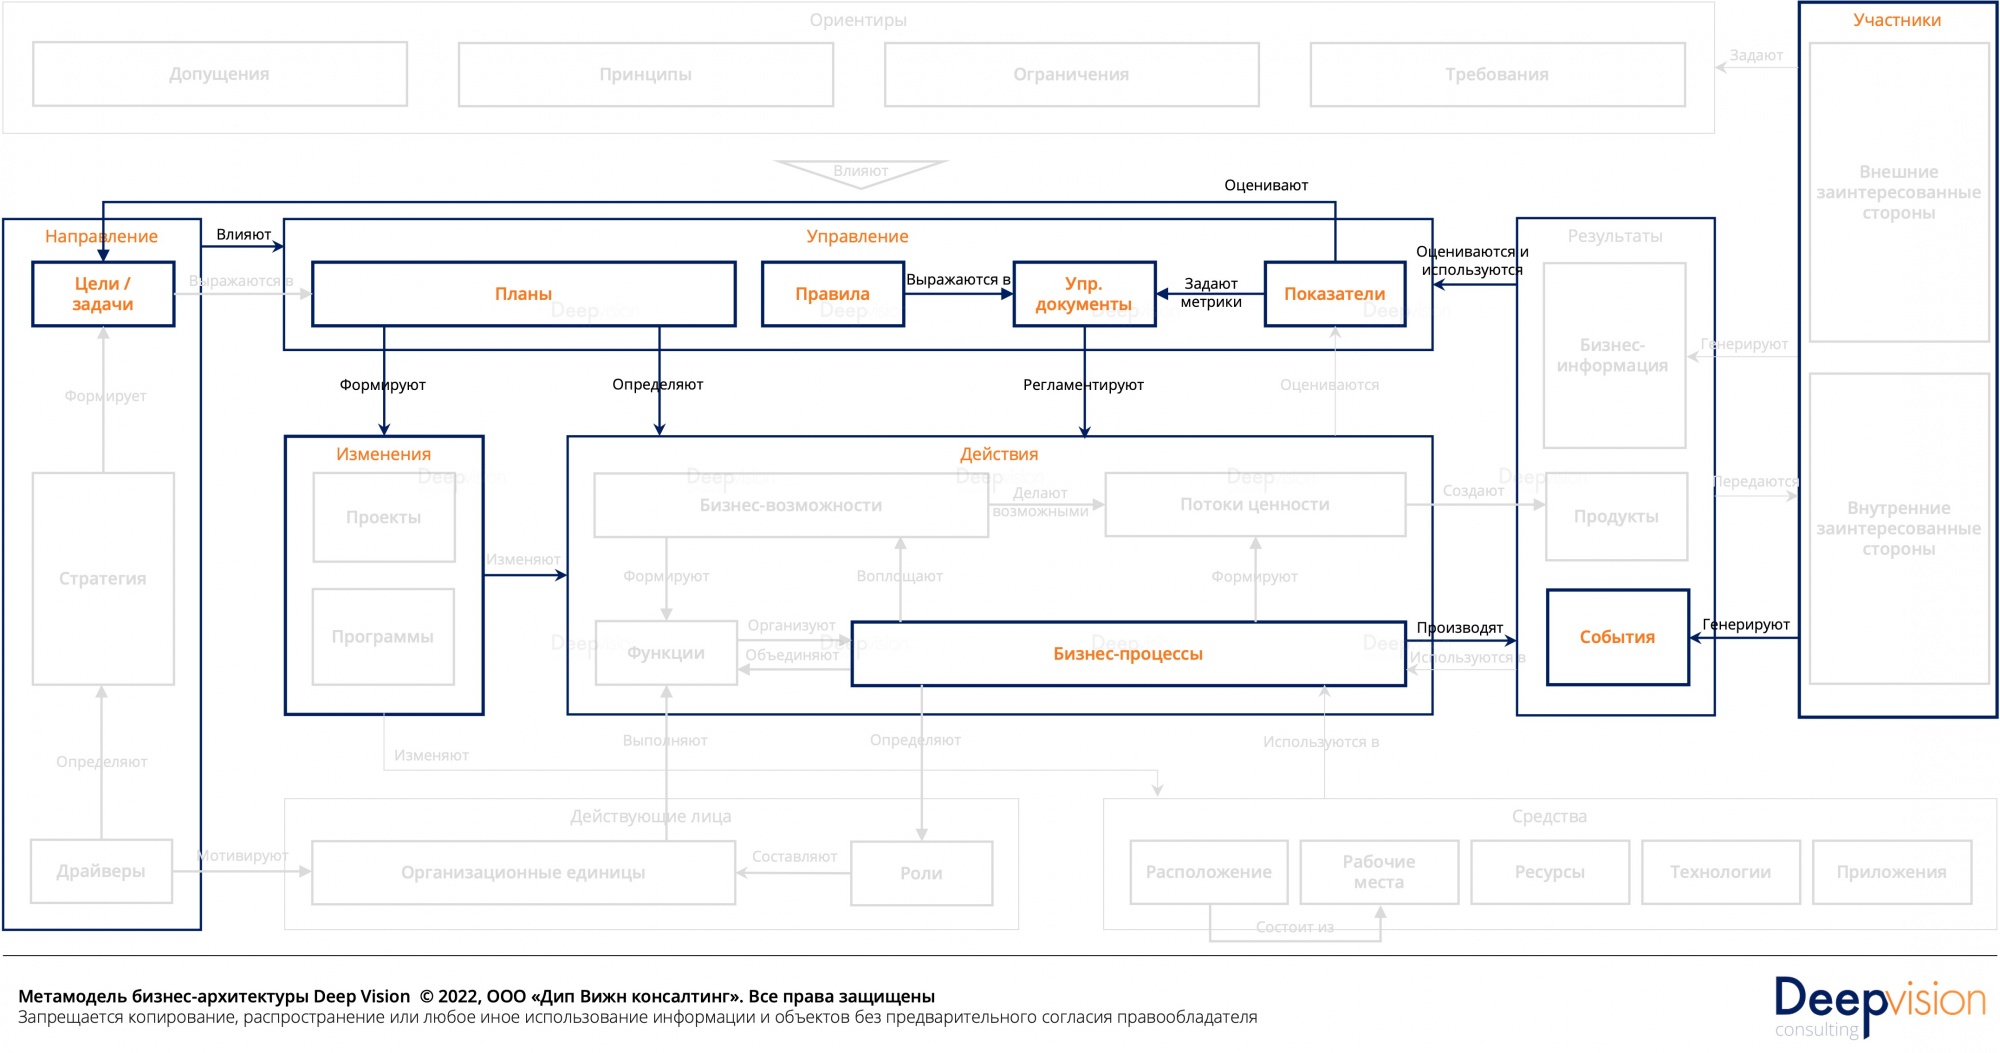 Метамодель бизнес-архитектуры - реактивныи контур.jpg